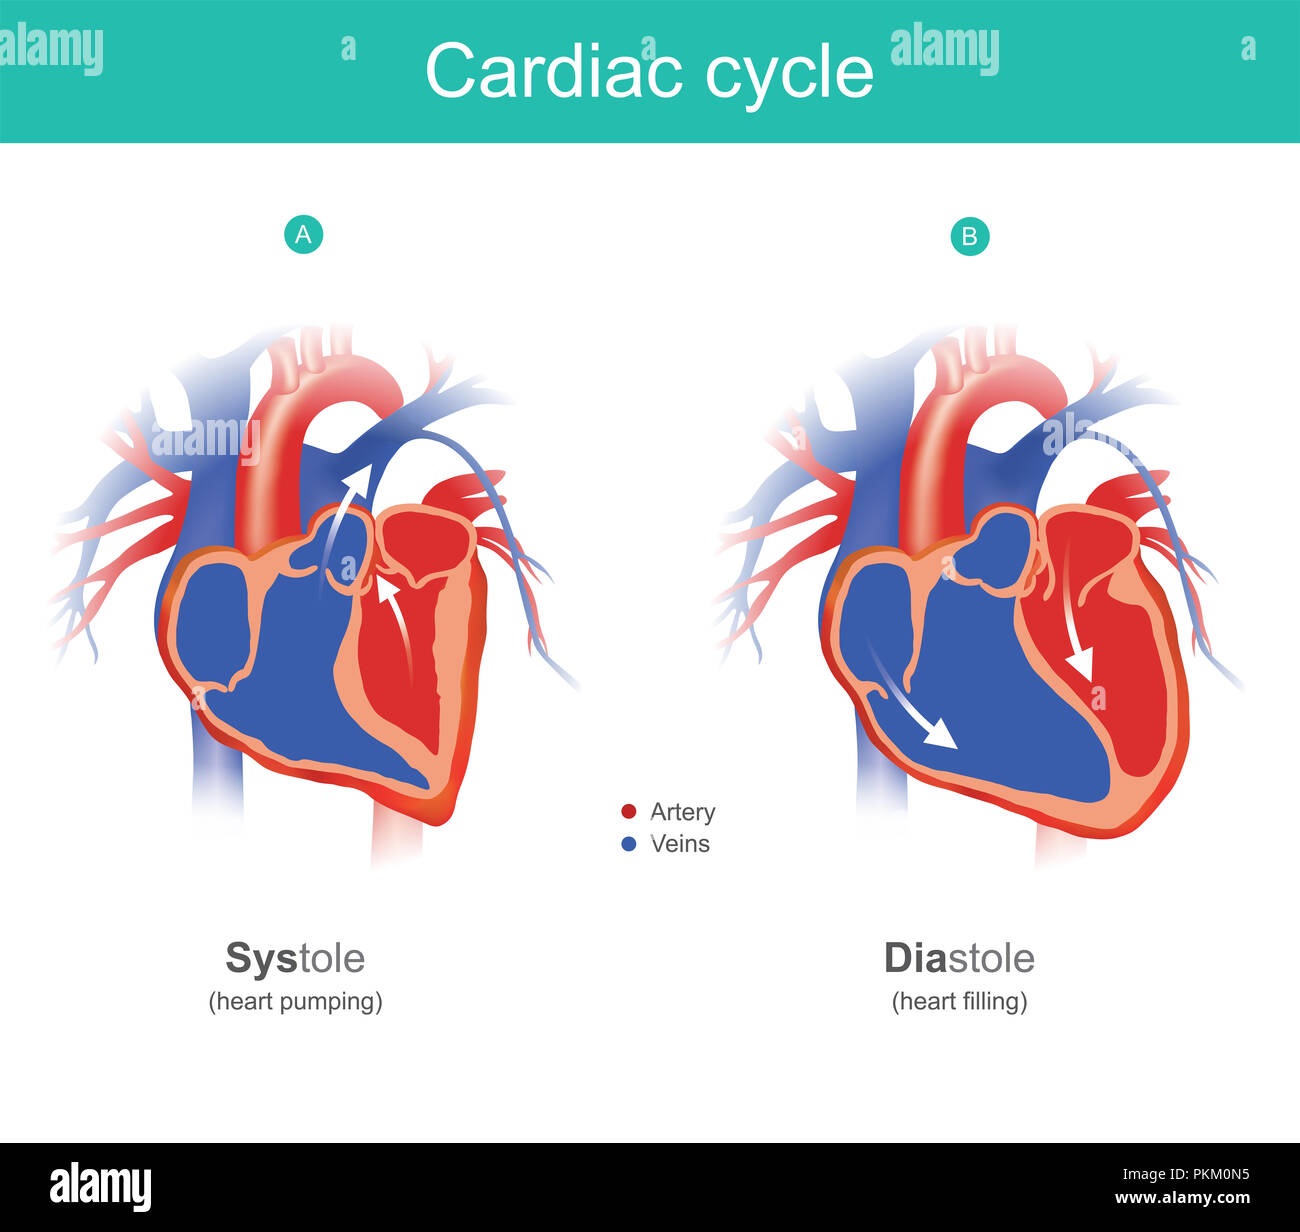 Das Herz ist das Organ des menschlichen Körpers, pumpt das Blut in den Körper. Anatomie Infografik. Stockfoto